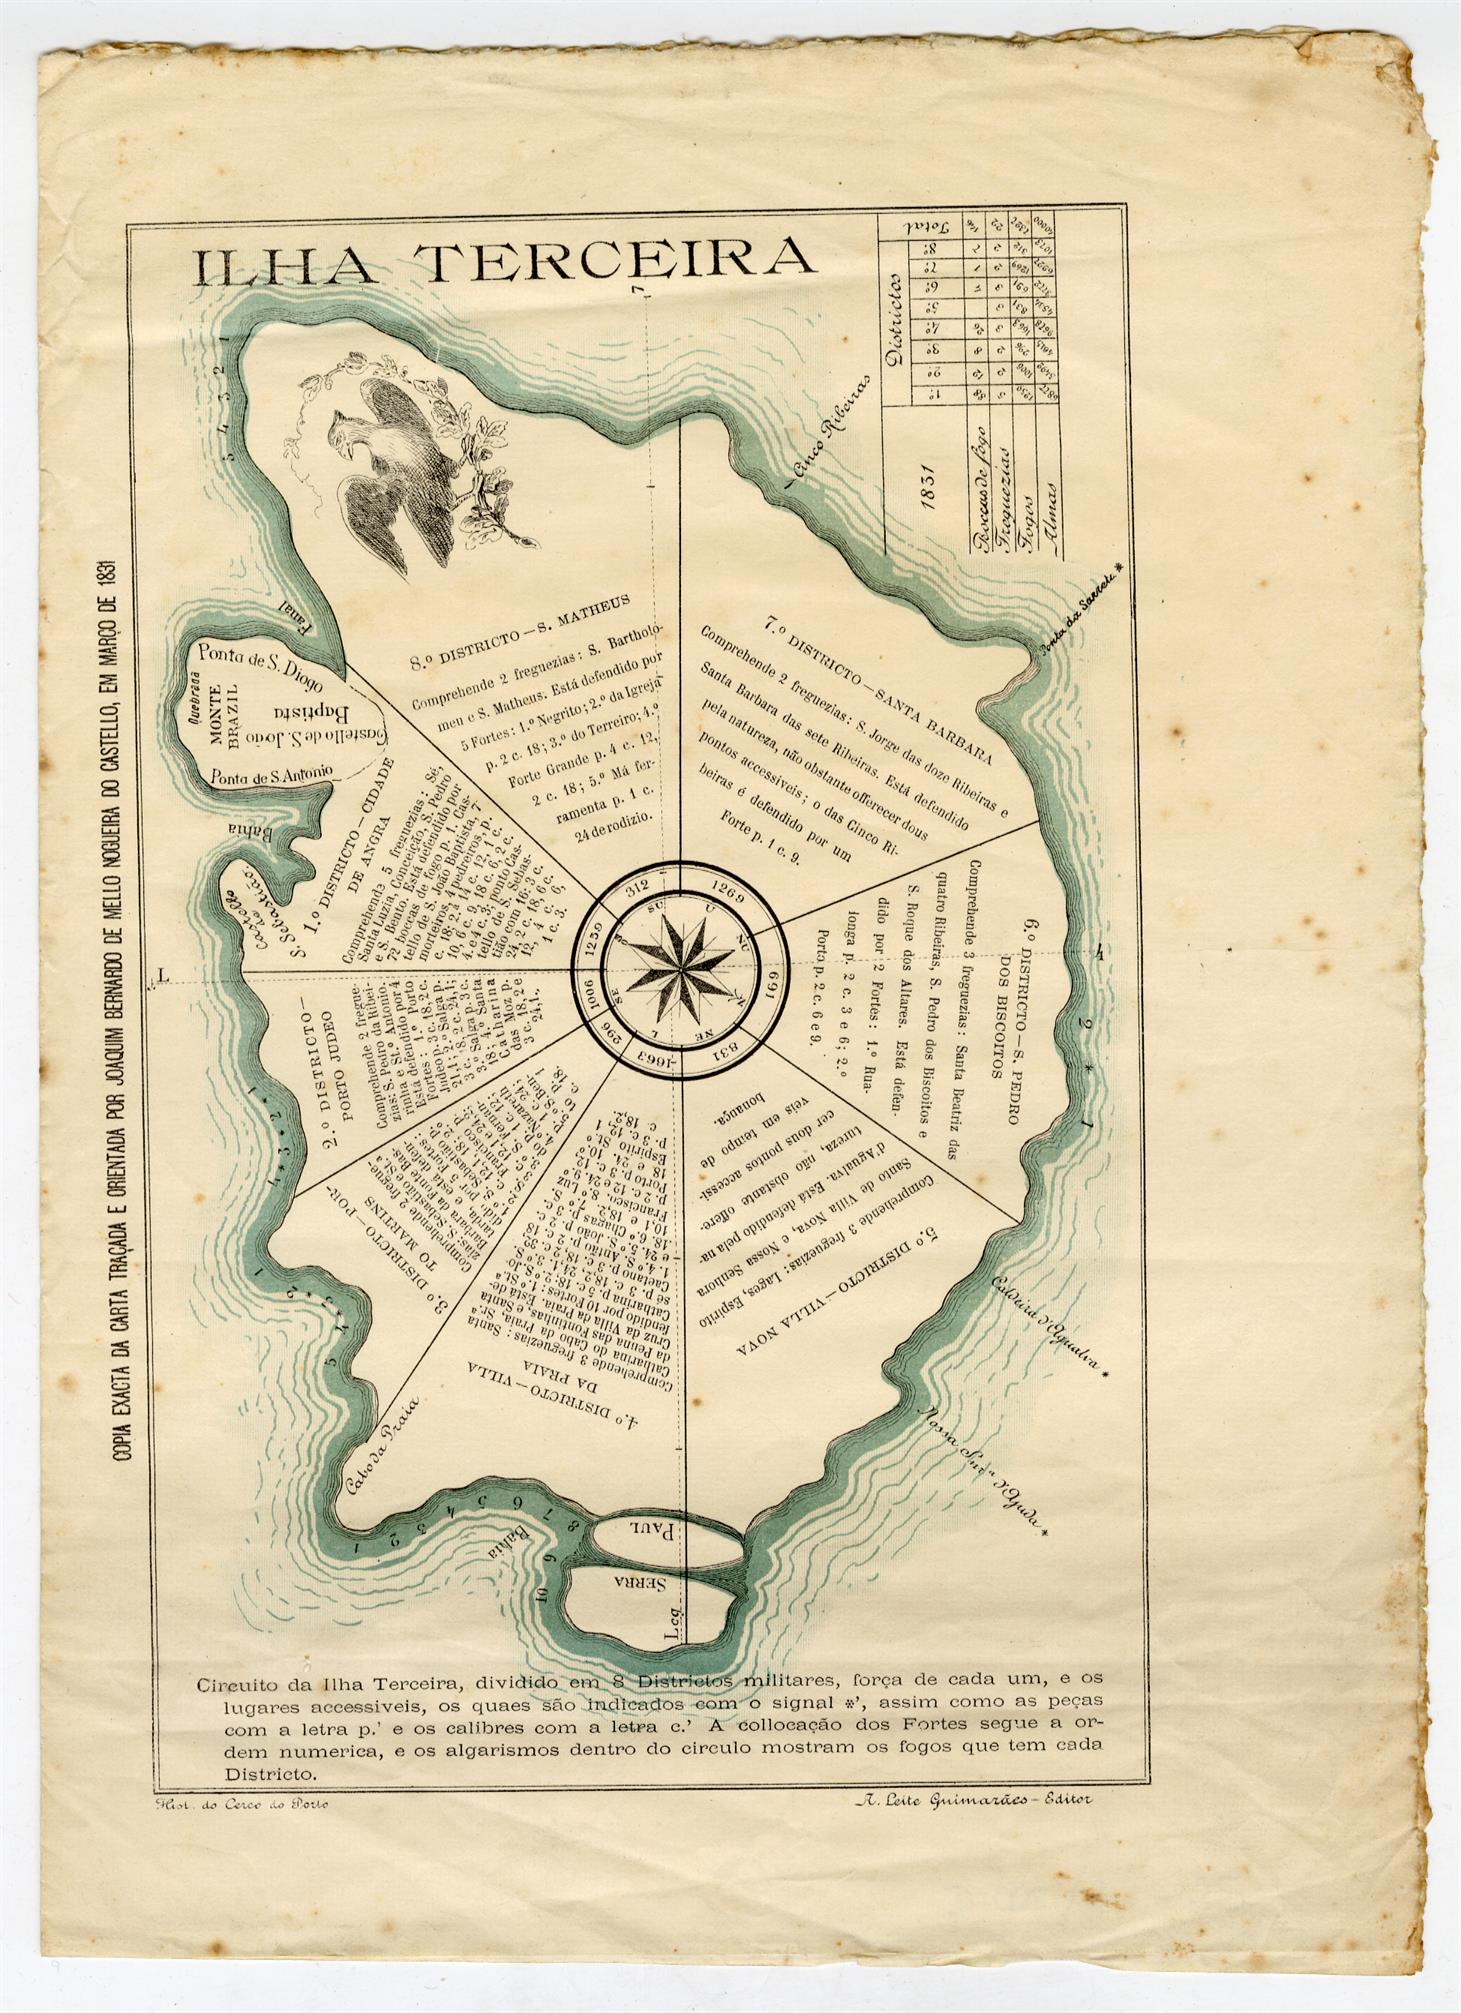 Ilha Terceira : cópia exata da carta traçada e orientada por Joaquim Bernardo de Melo Nogueira do Castelo, em março de 1831